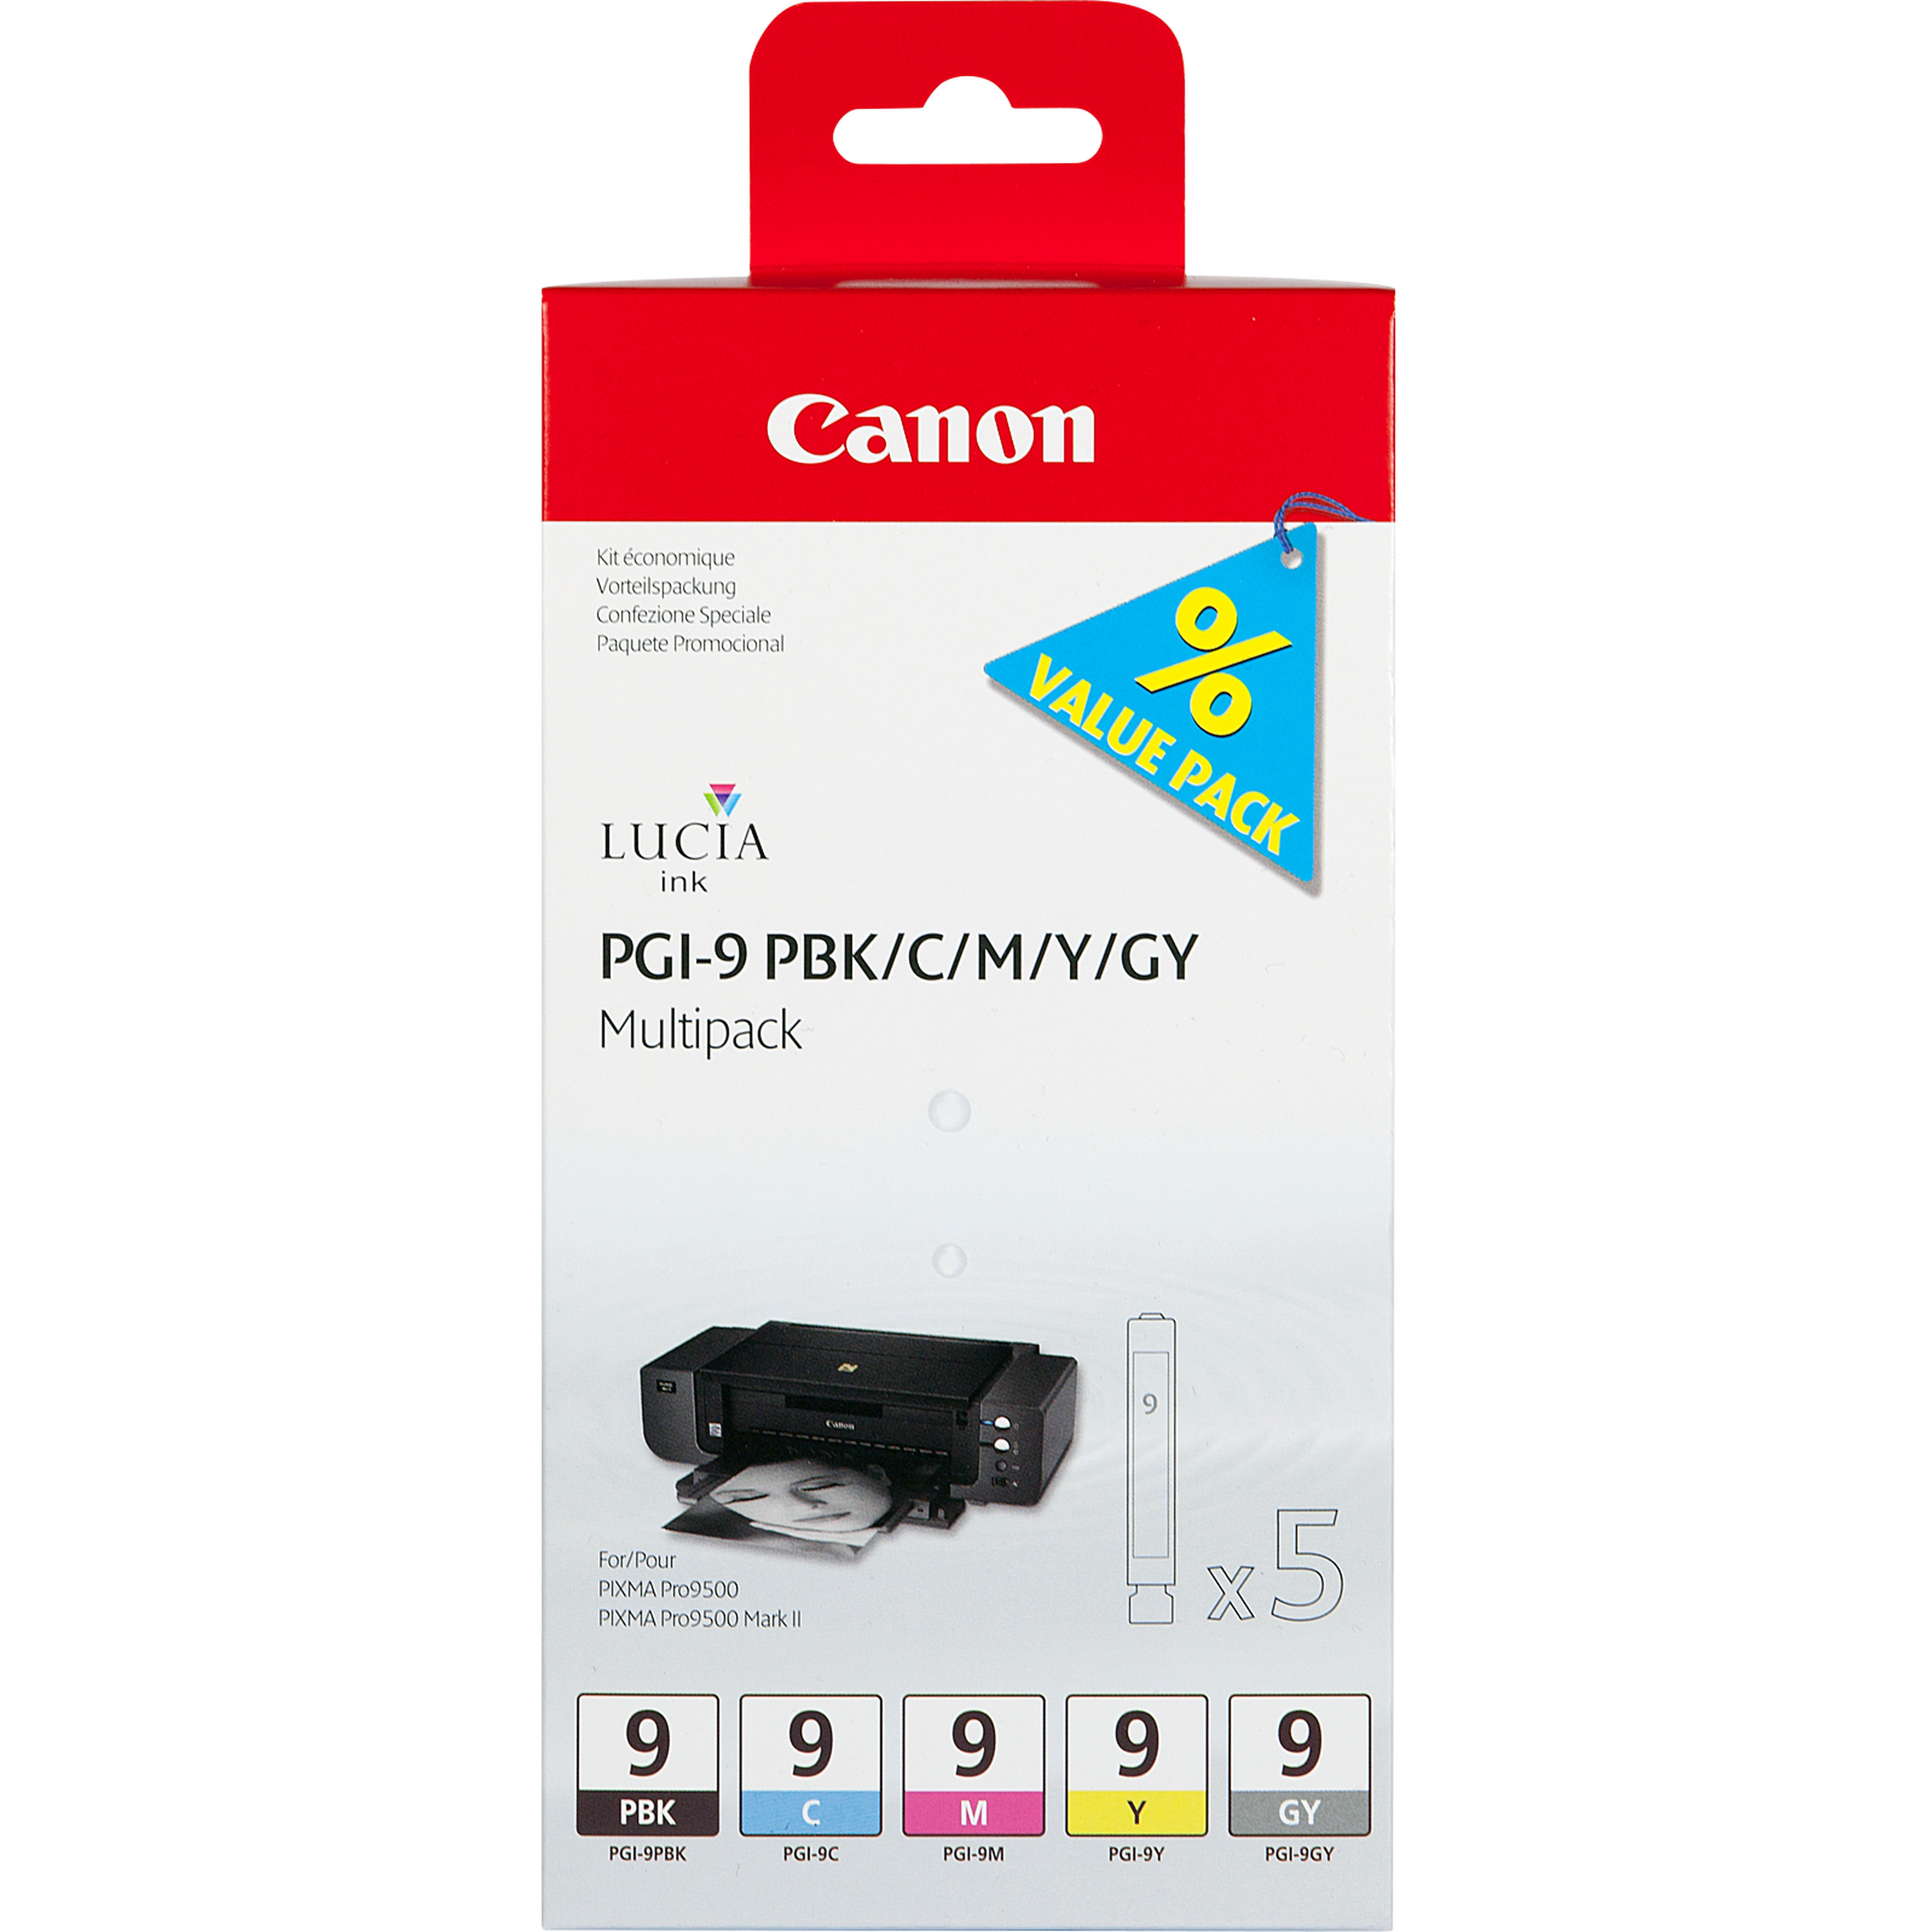 Canon 1034B013 multi pack / cyaan, foto zwart, geel, grijs, magenta